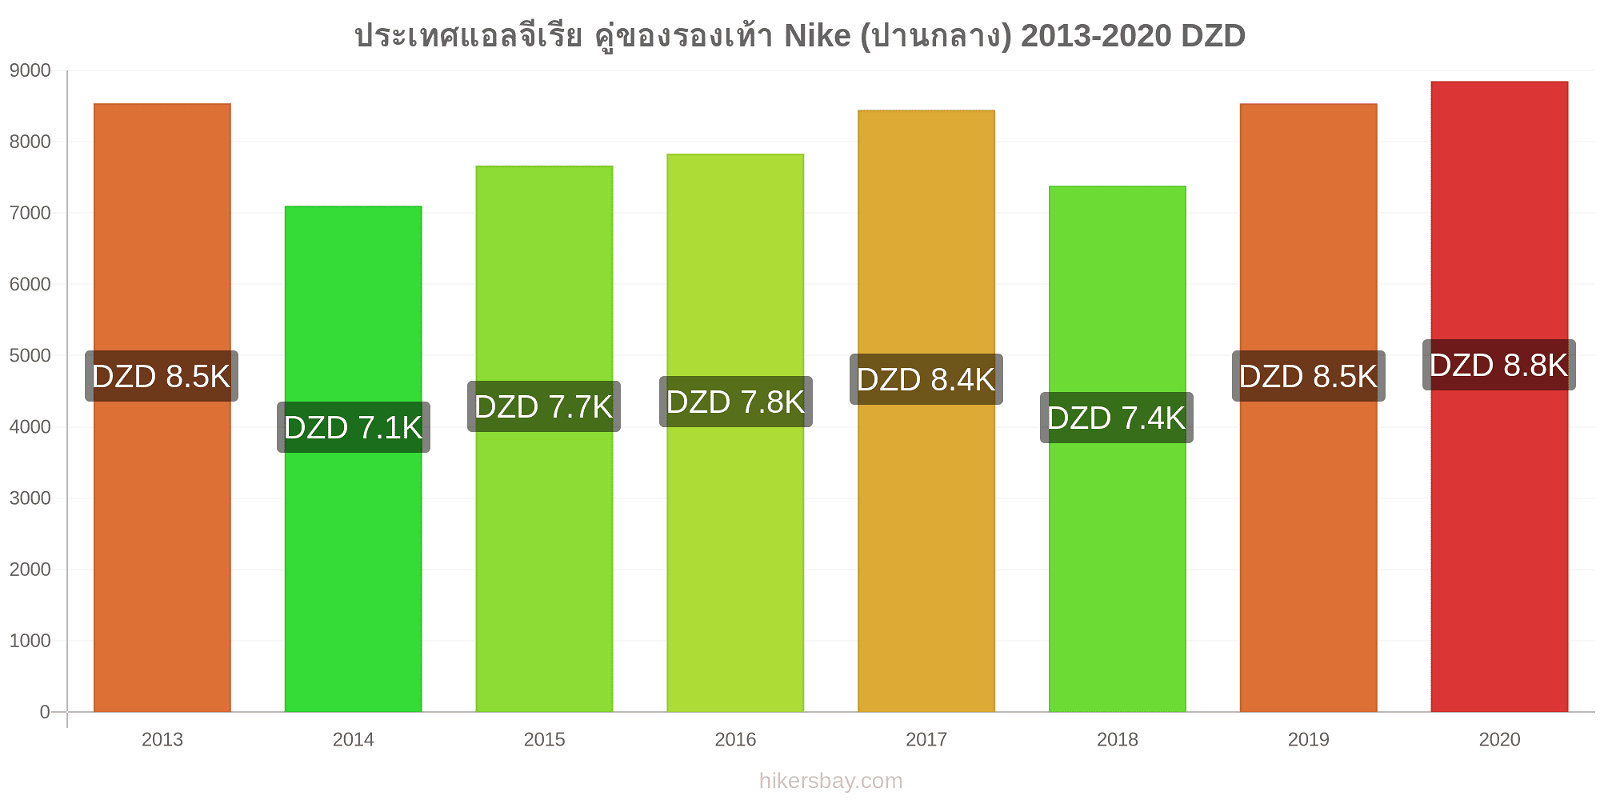 ประเทศแอลจีเรีย การเปลี่ยนแปลงราคา คู่ของรองเท้า Nike (ปานกลาง) hikersbay.com